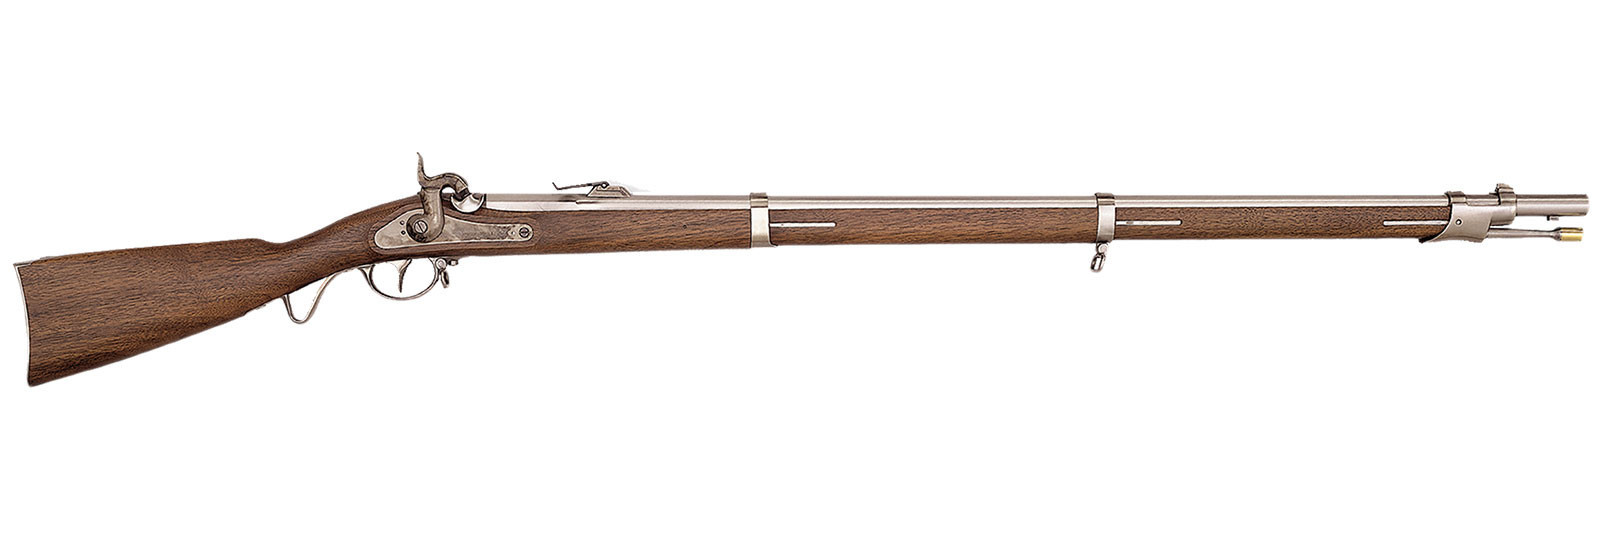 1857 Württembergischen Rifle